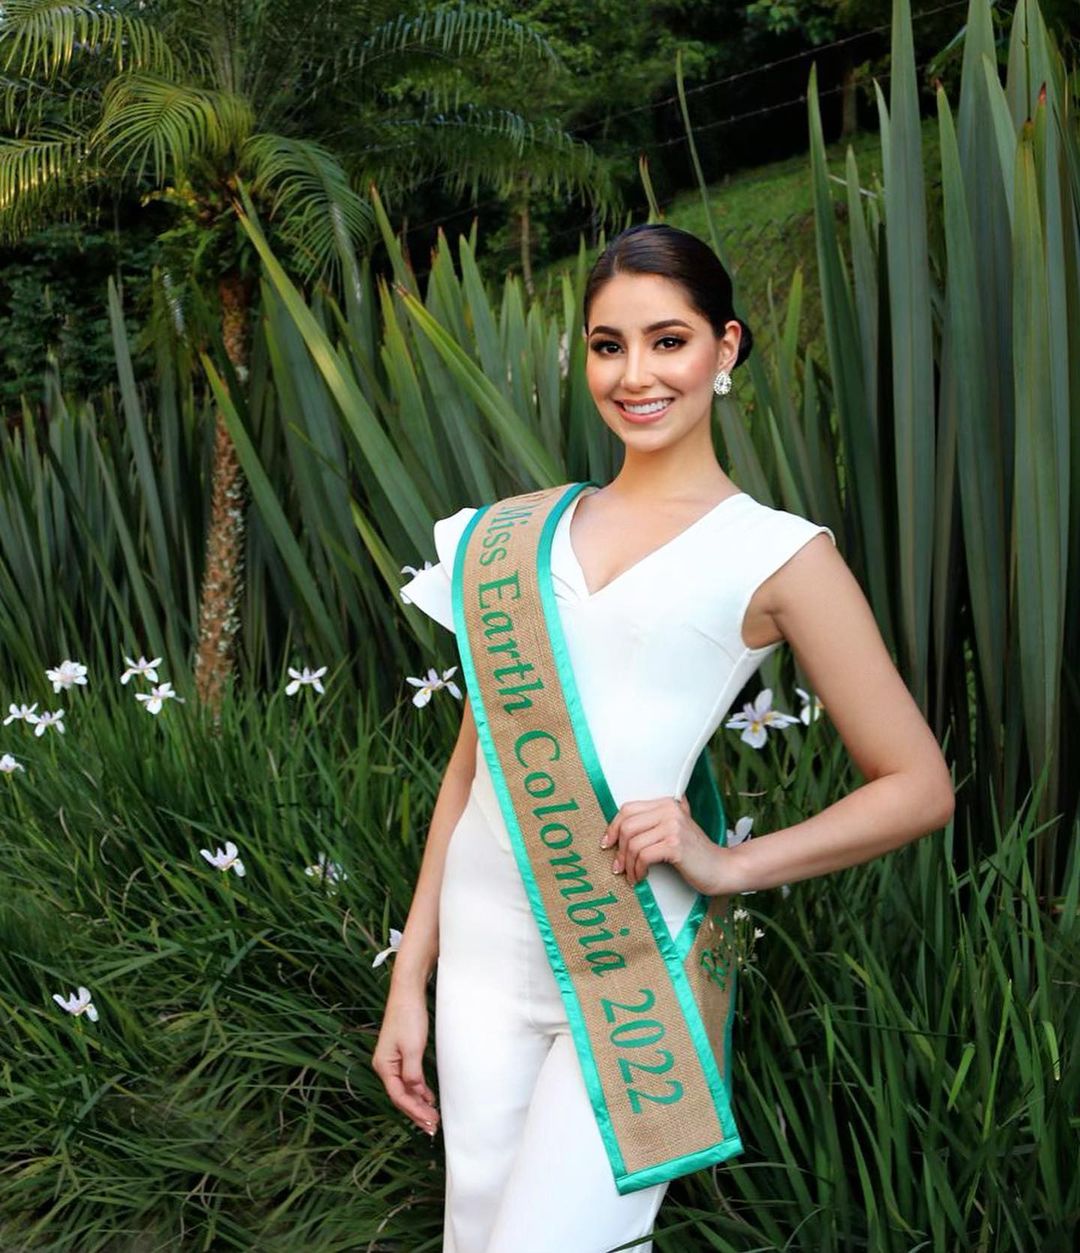 Miss Earth Colombia - Ứng cử viên sáng giá hàng đầu cho ngôi vị Hoa hậu Trái đất 2022 - Ảnh 3.